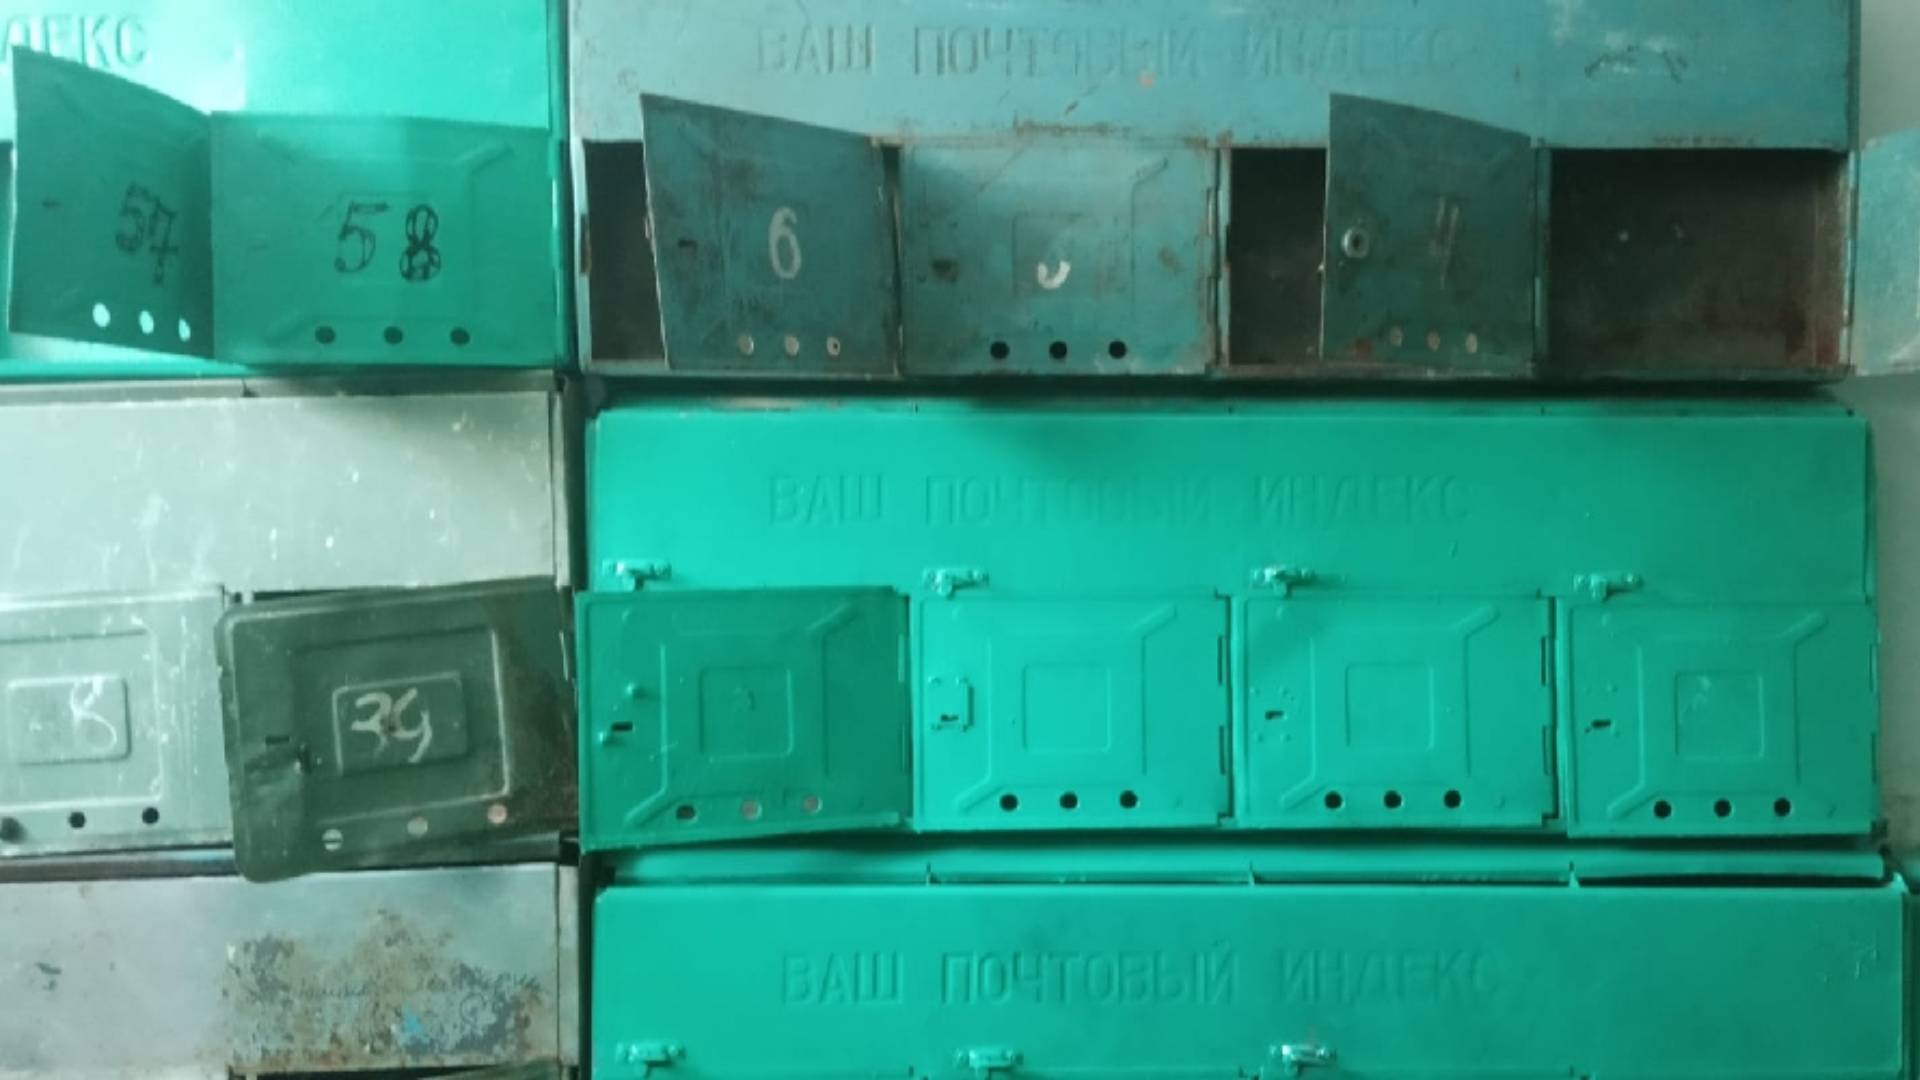 Ремонт капитальный, но 40-летние почтовые ящики просто покрасили